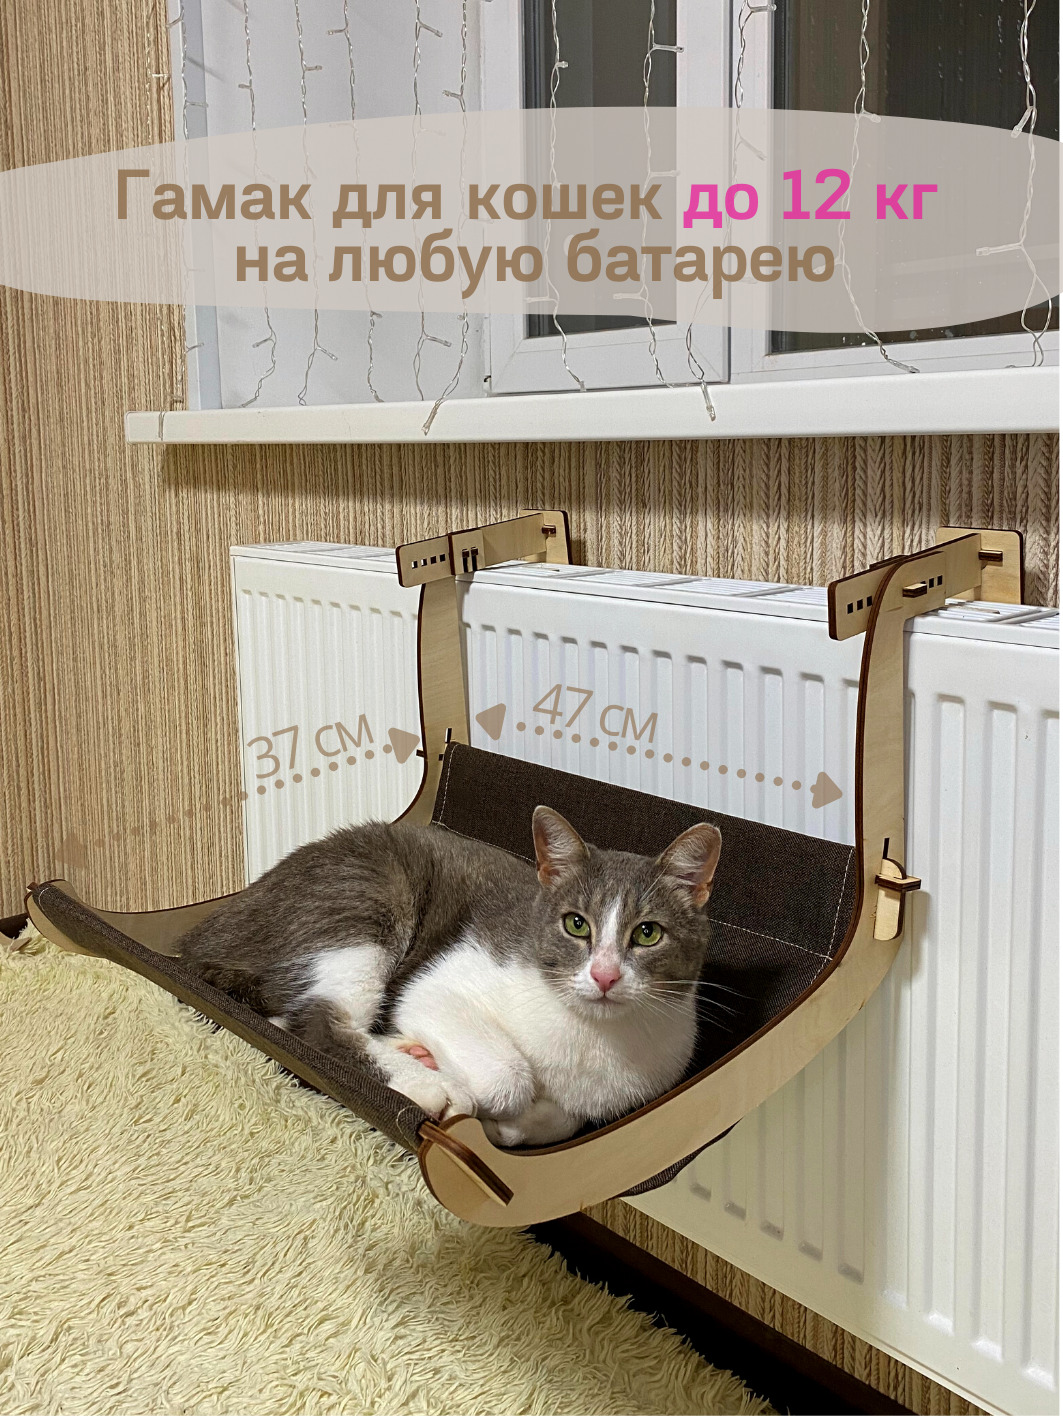 Купить гамак для кошки в Томске от рублей